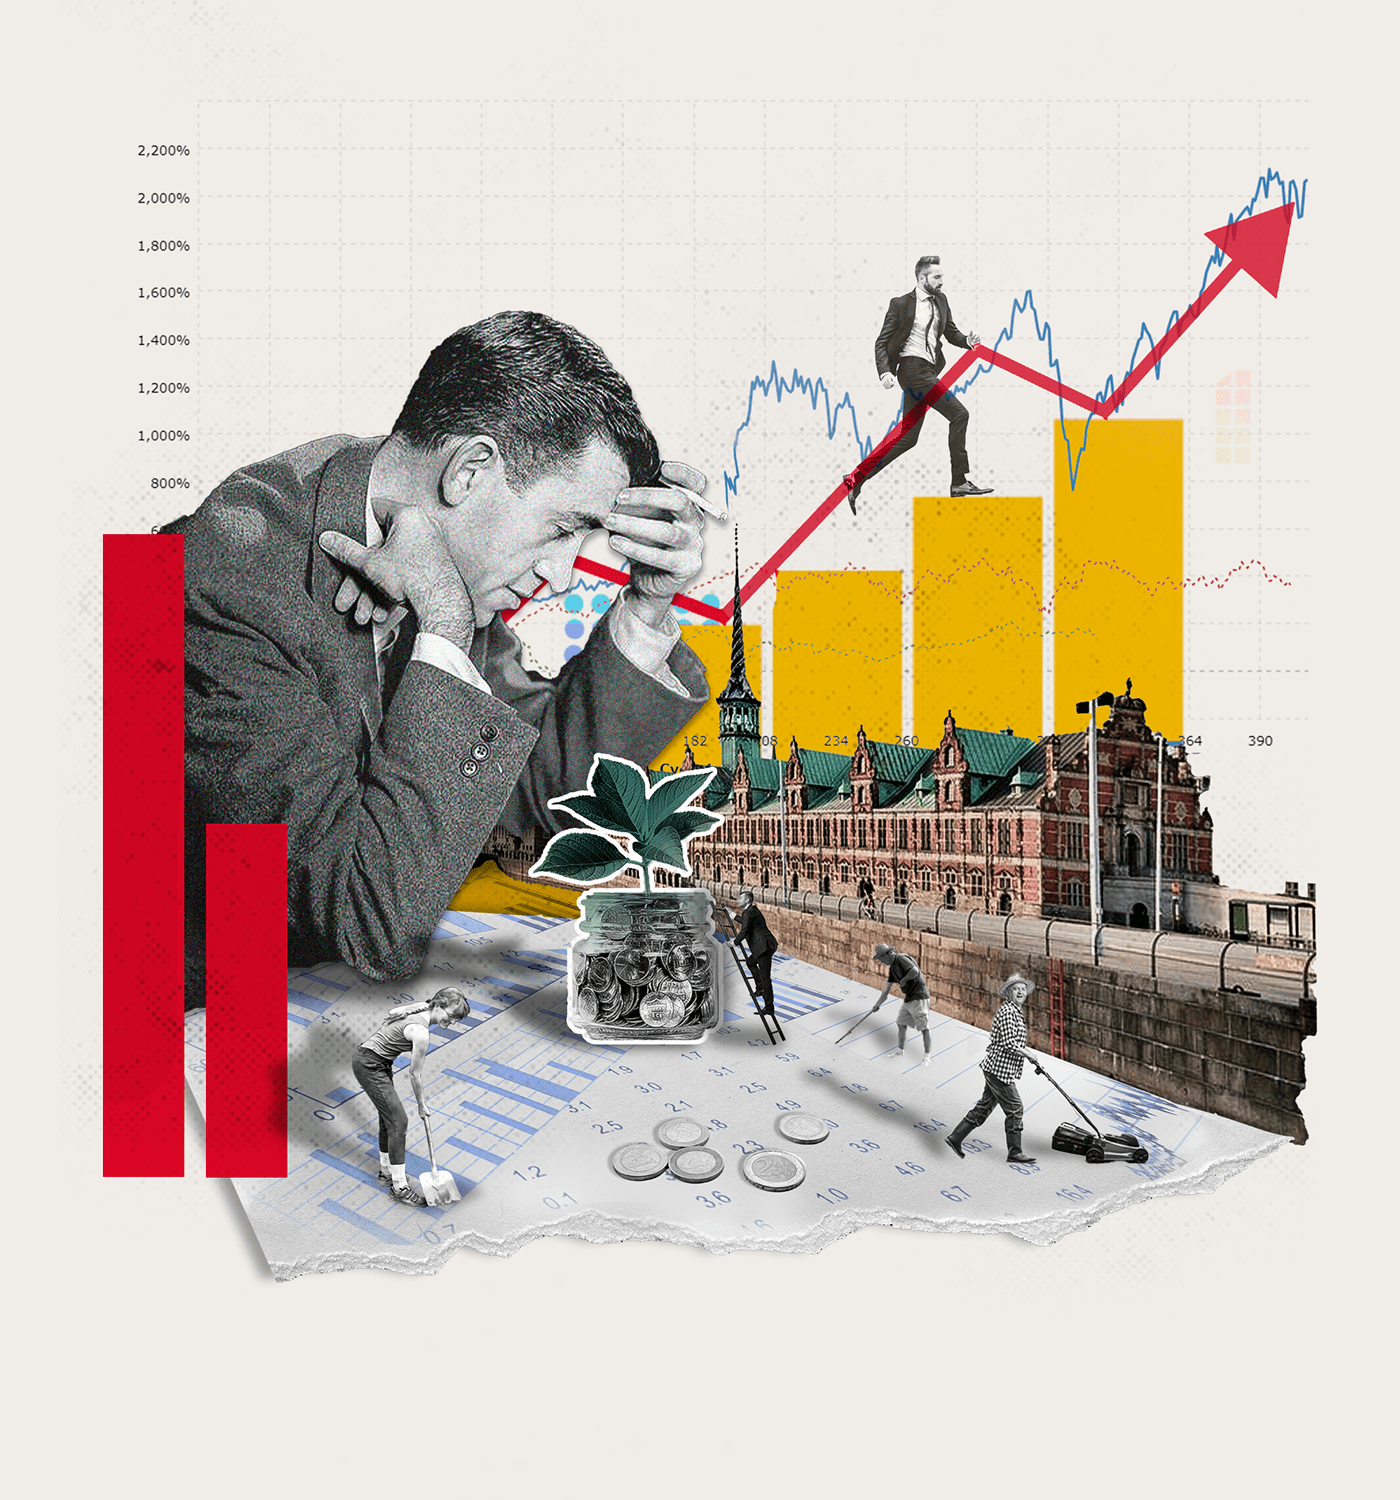 Børsen business collage collage illustration finance ILLUSTRATION  stocks trading Web Design  Website